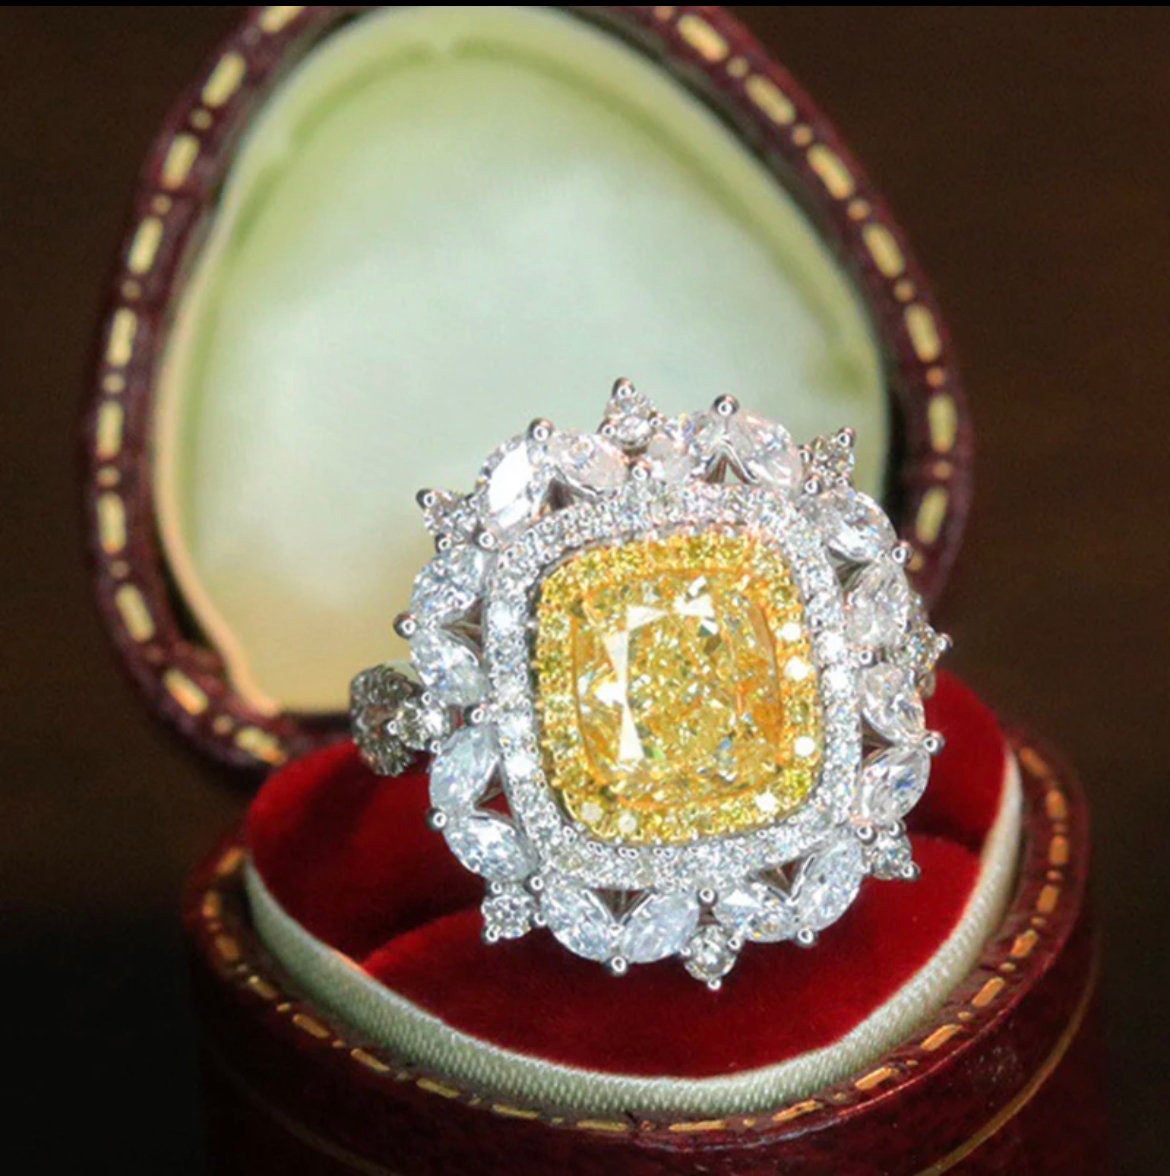 Stunning 2ct Natural Yellow Diamond Ring with 1.50ct White Diamonds